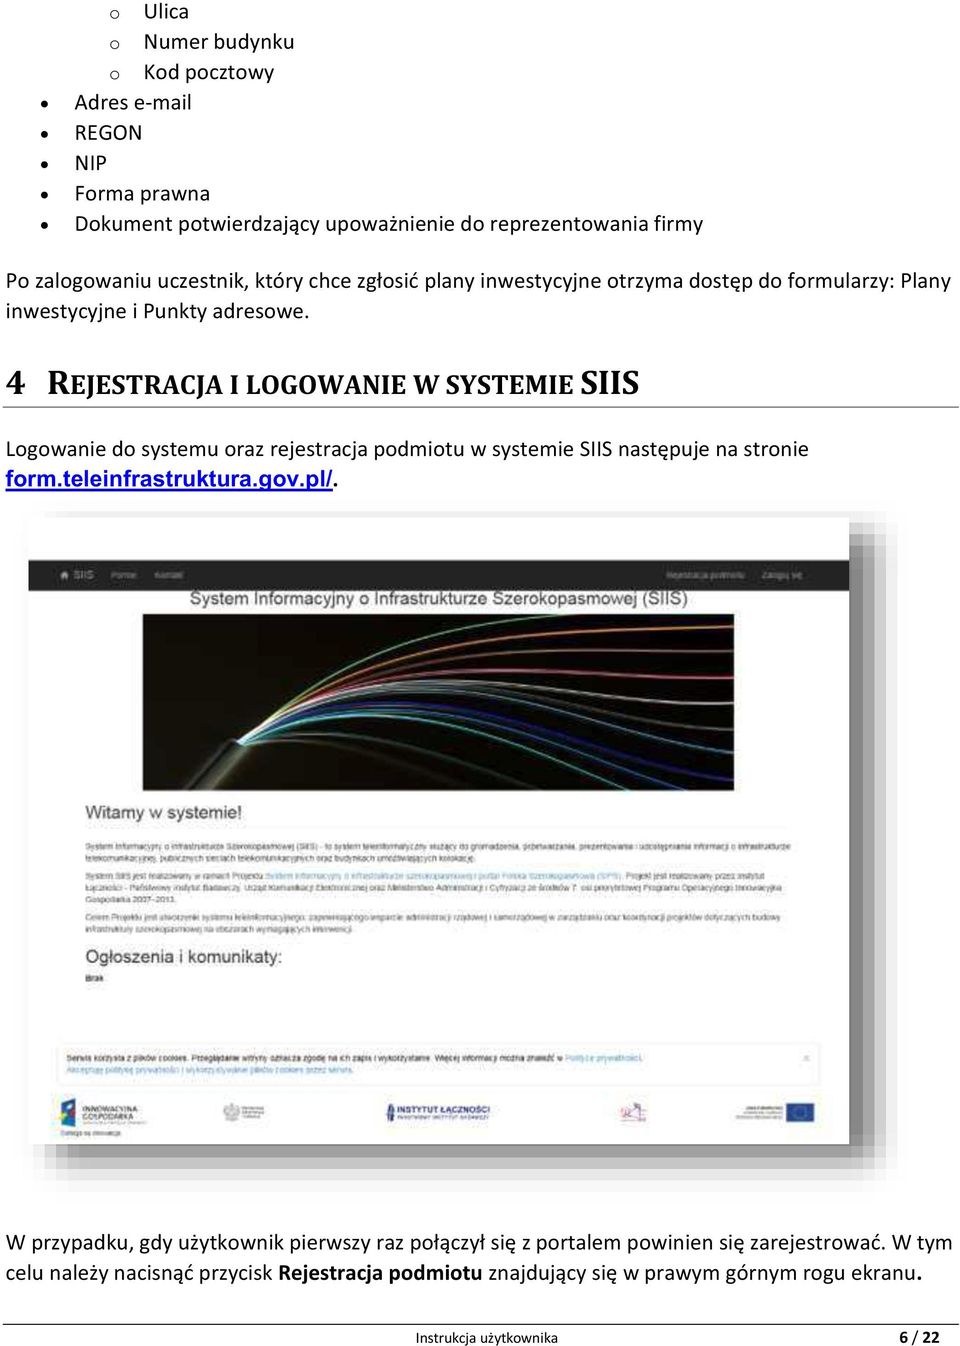 4 REJESTRACJA I LOGOWANIE W SYSTEMIE SIIS Logowanie do systemu oraz rejestracja podmiotu w systemie SIIS następuje na stronie form.teleinfrastruktura.gov.pl/.